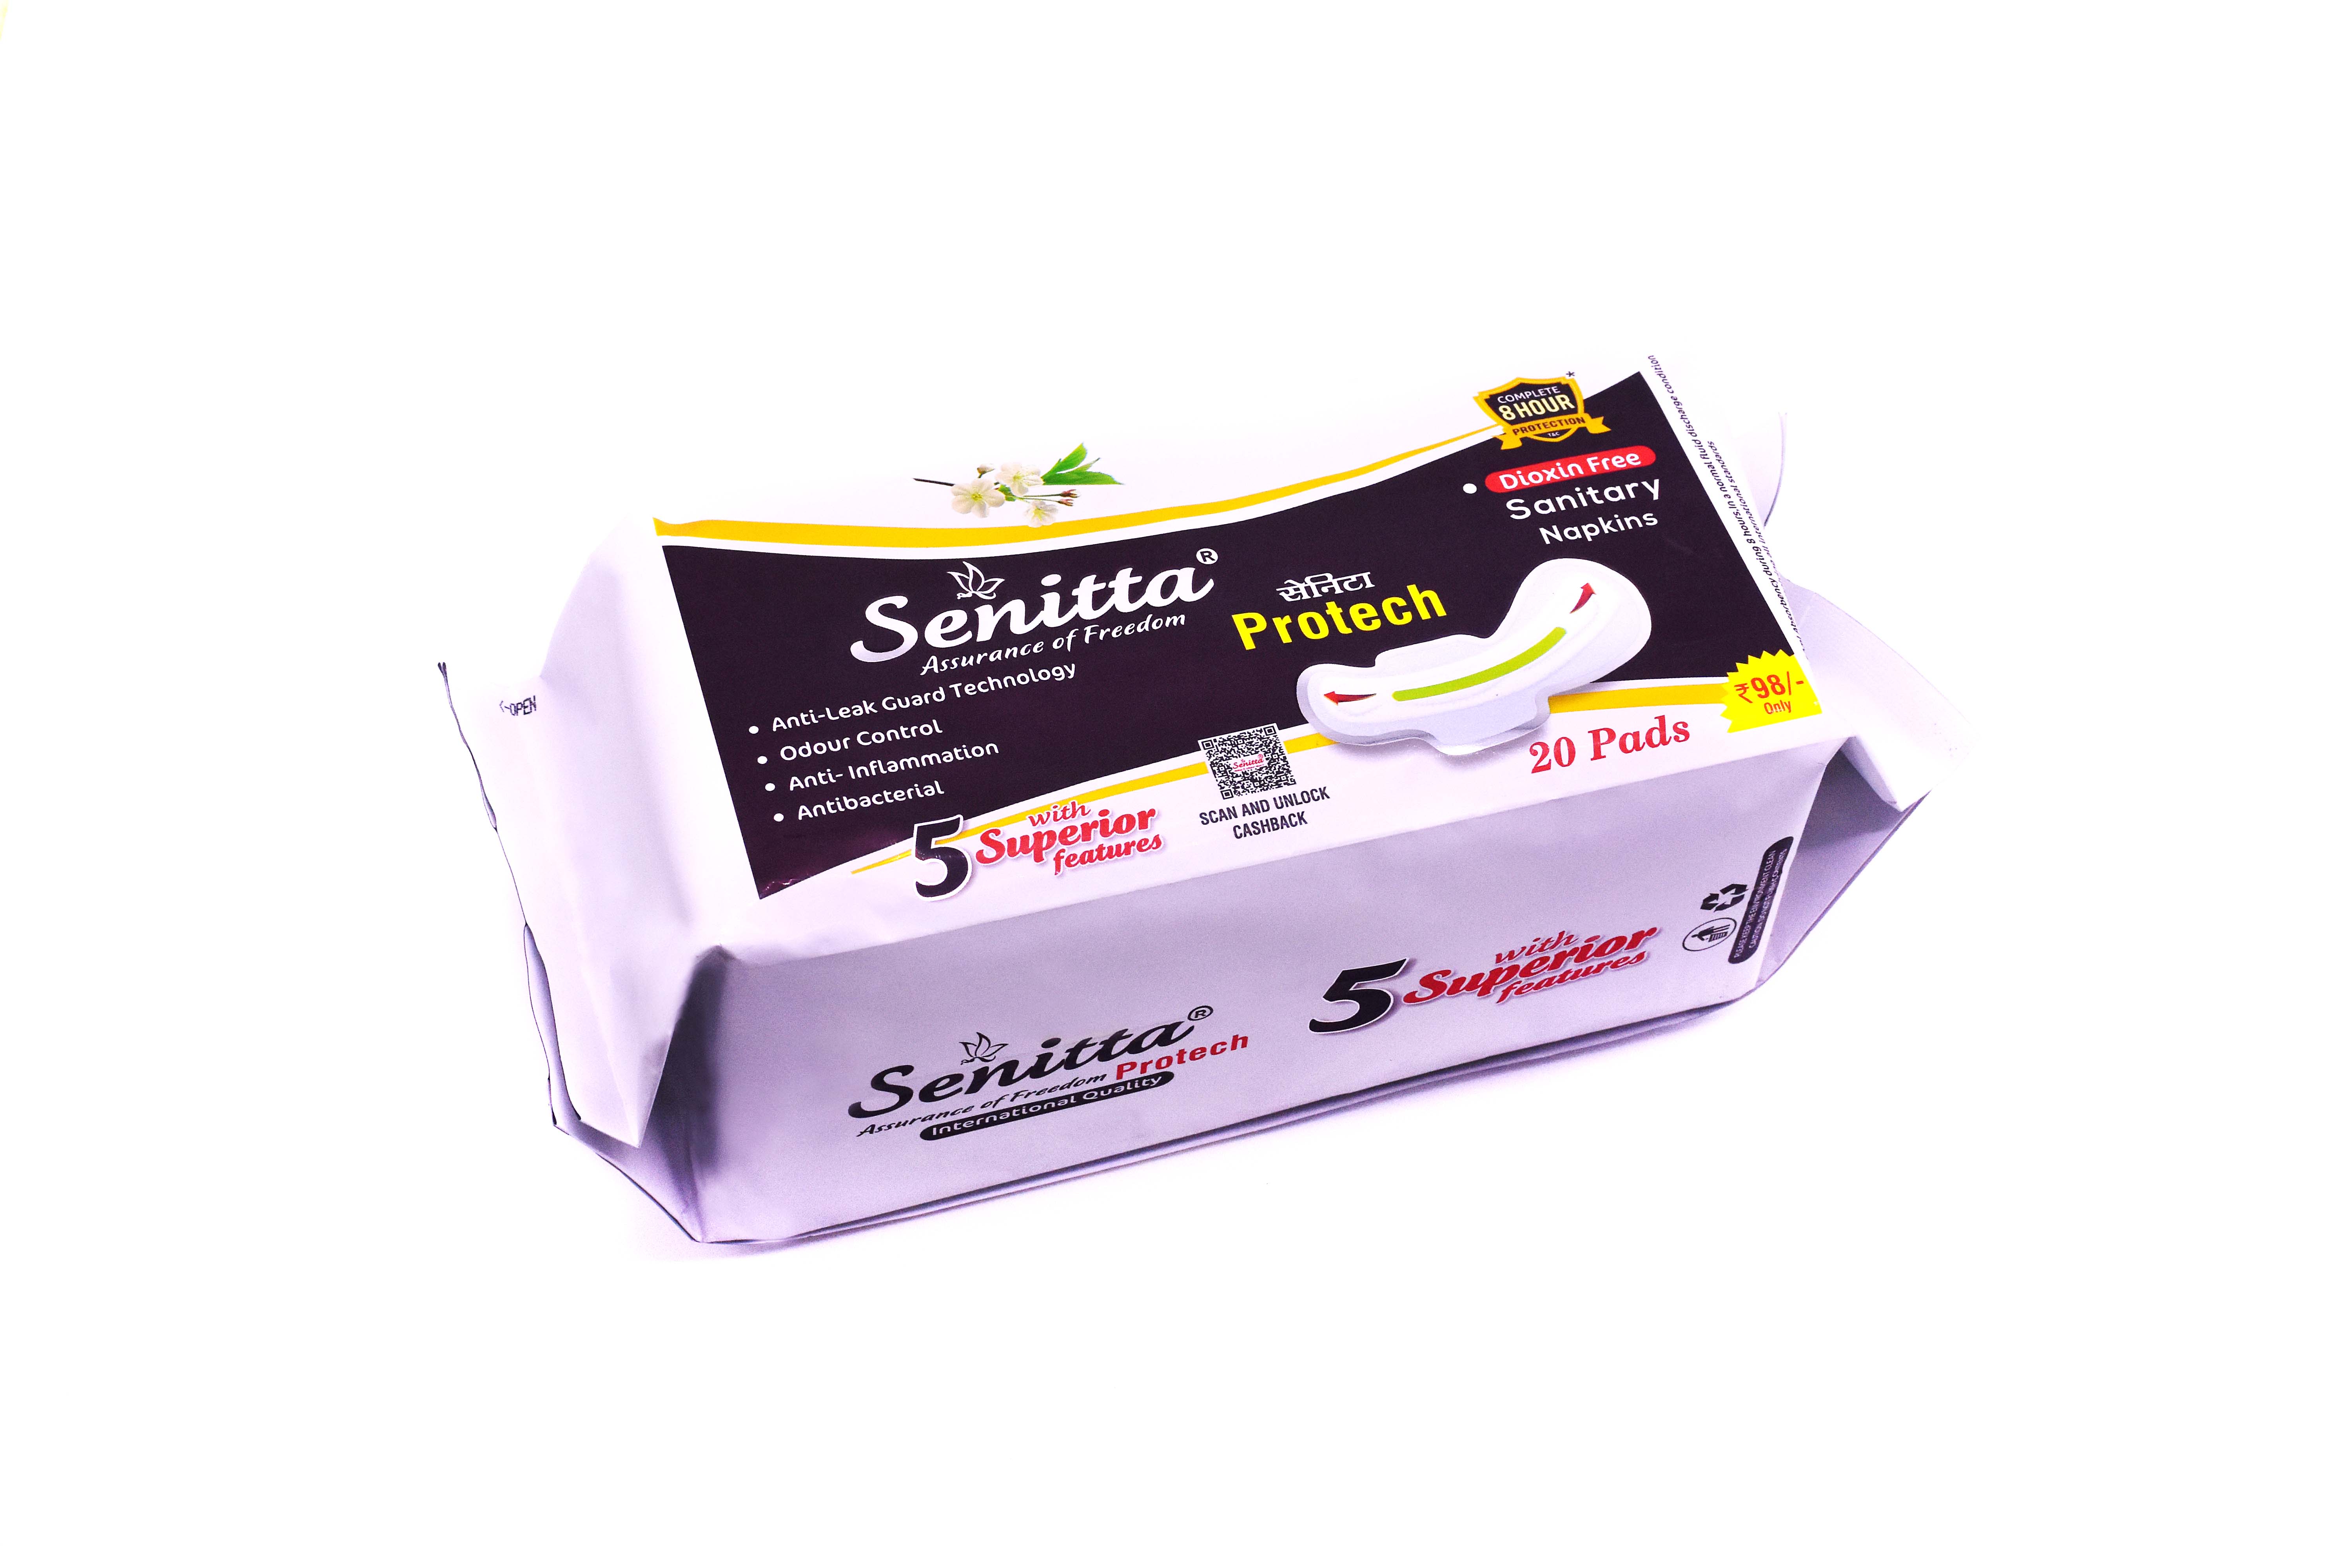 Sanitary Napkins (Pack of 20 - 240 mm Senitta Protech )